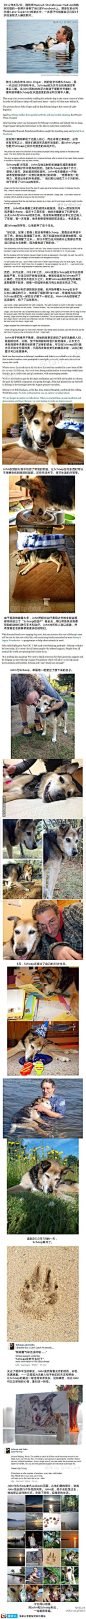 查了下才知道,原来这只名叫Schoep的狗狗已在今年7月过世。虽然最初的照片已经是一年多前的报道了,但每次看见仍然会哭得稀里哗啦。(@fall_ark)